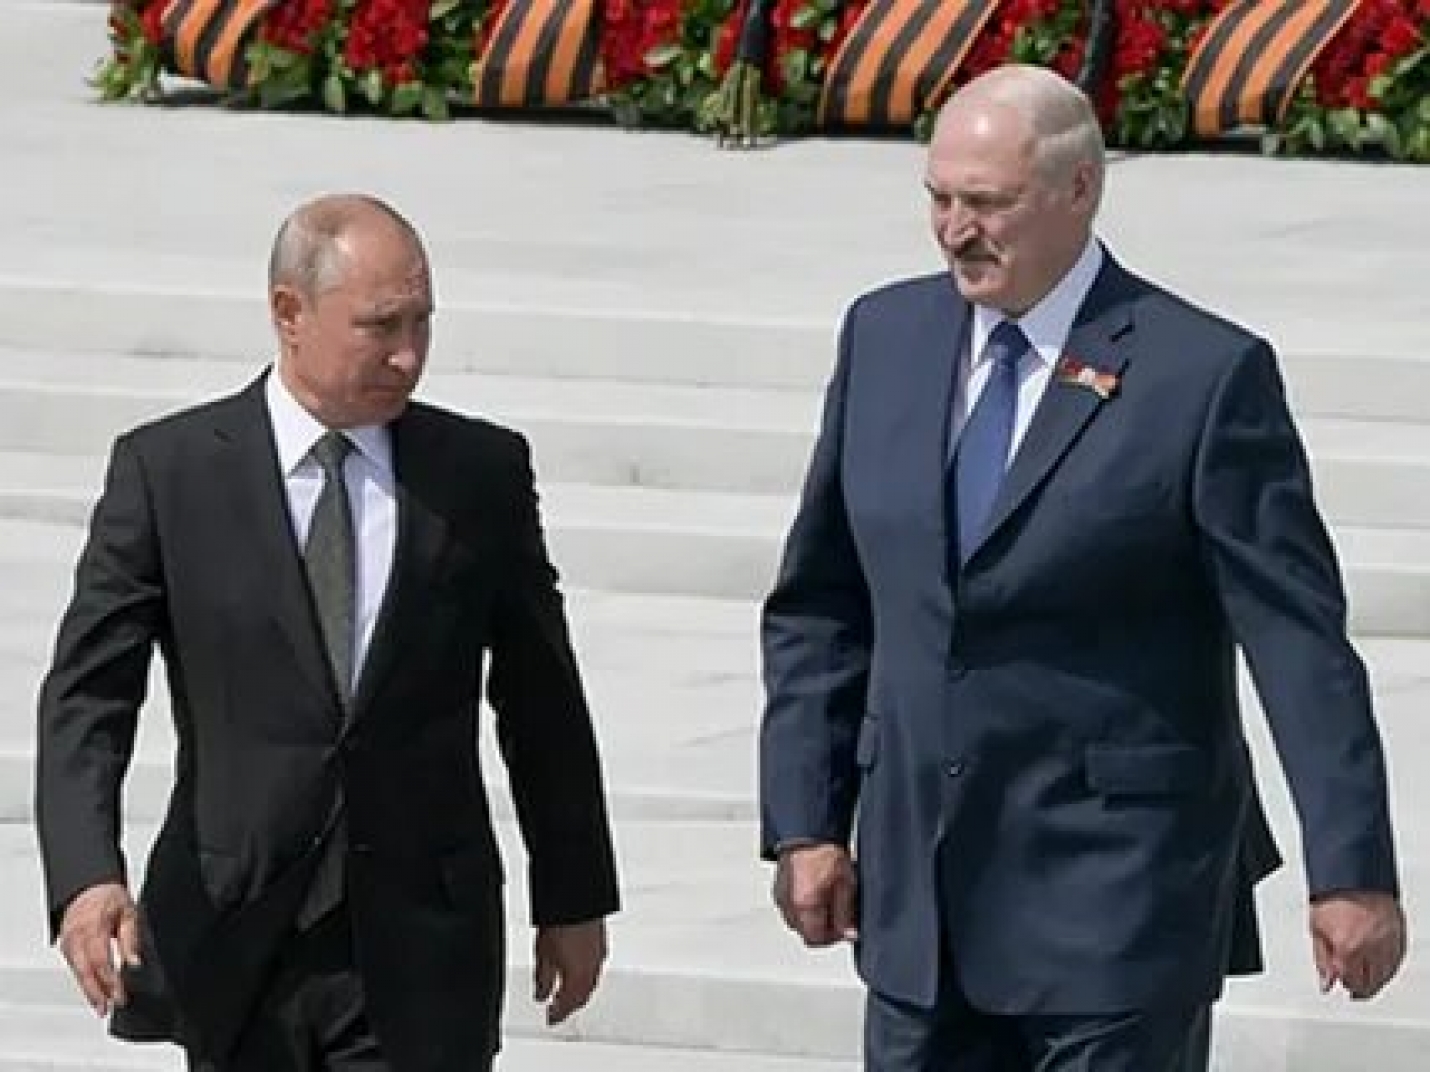 Путин поздравил Лукашенко с победой на президентских выборах